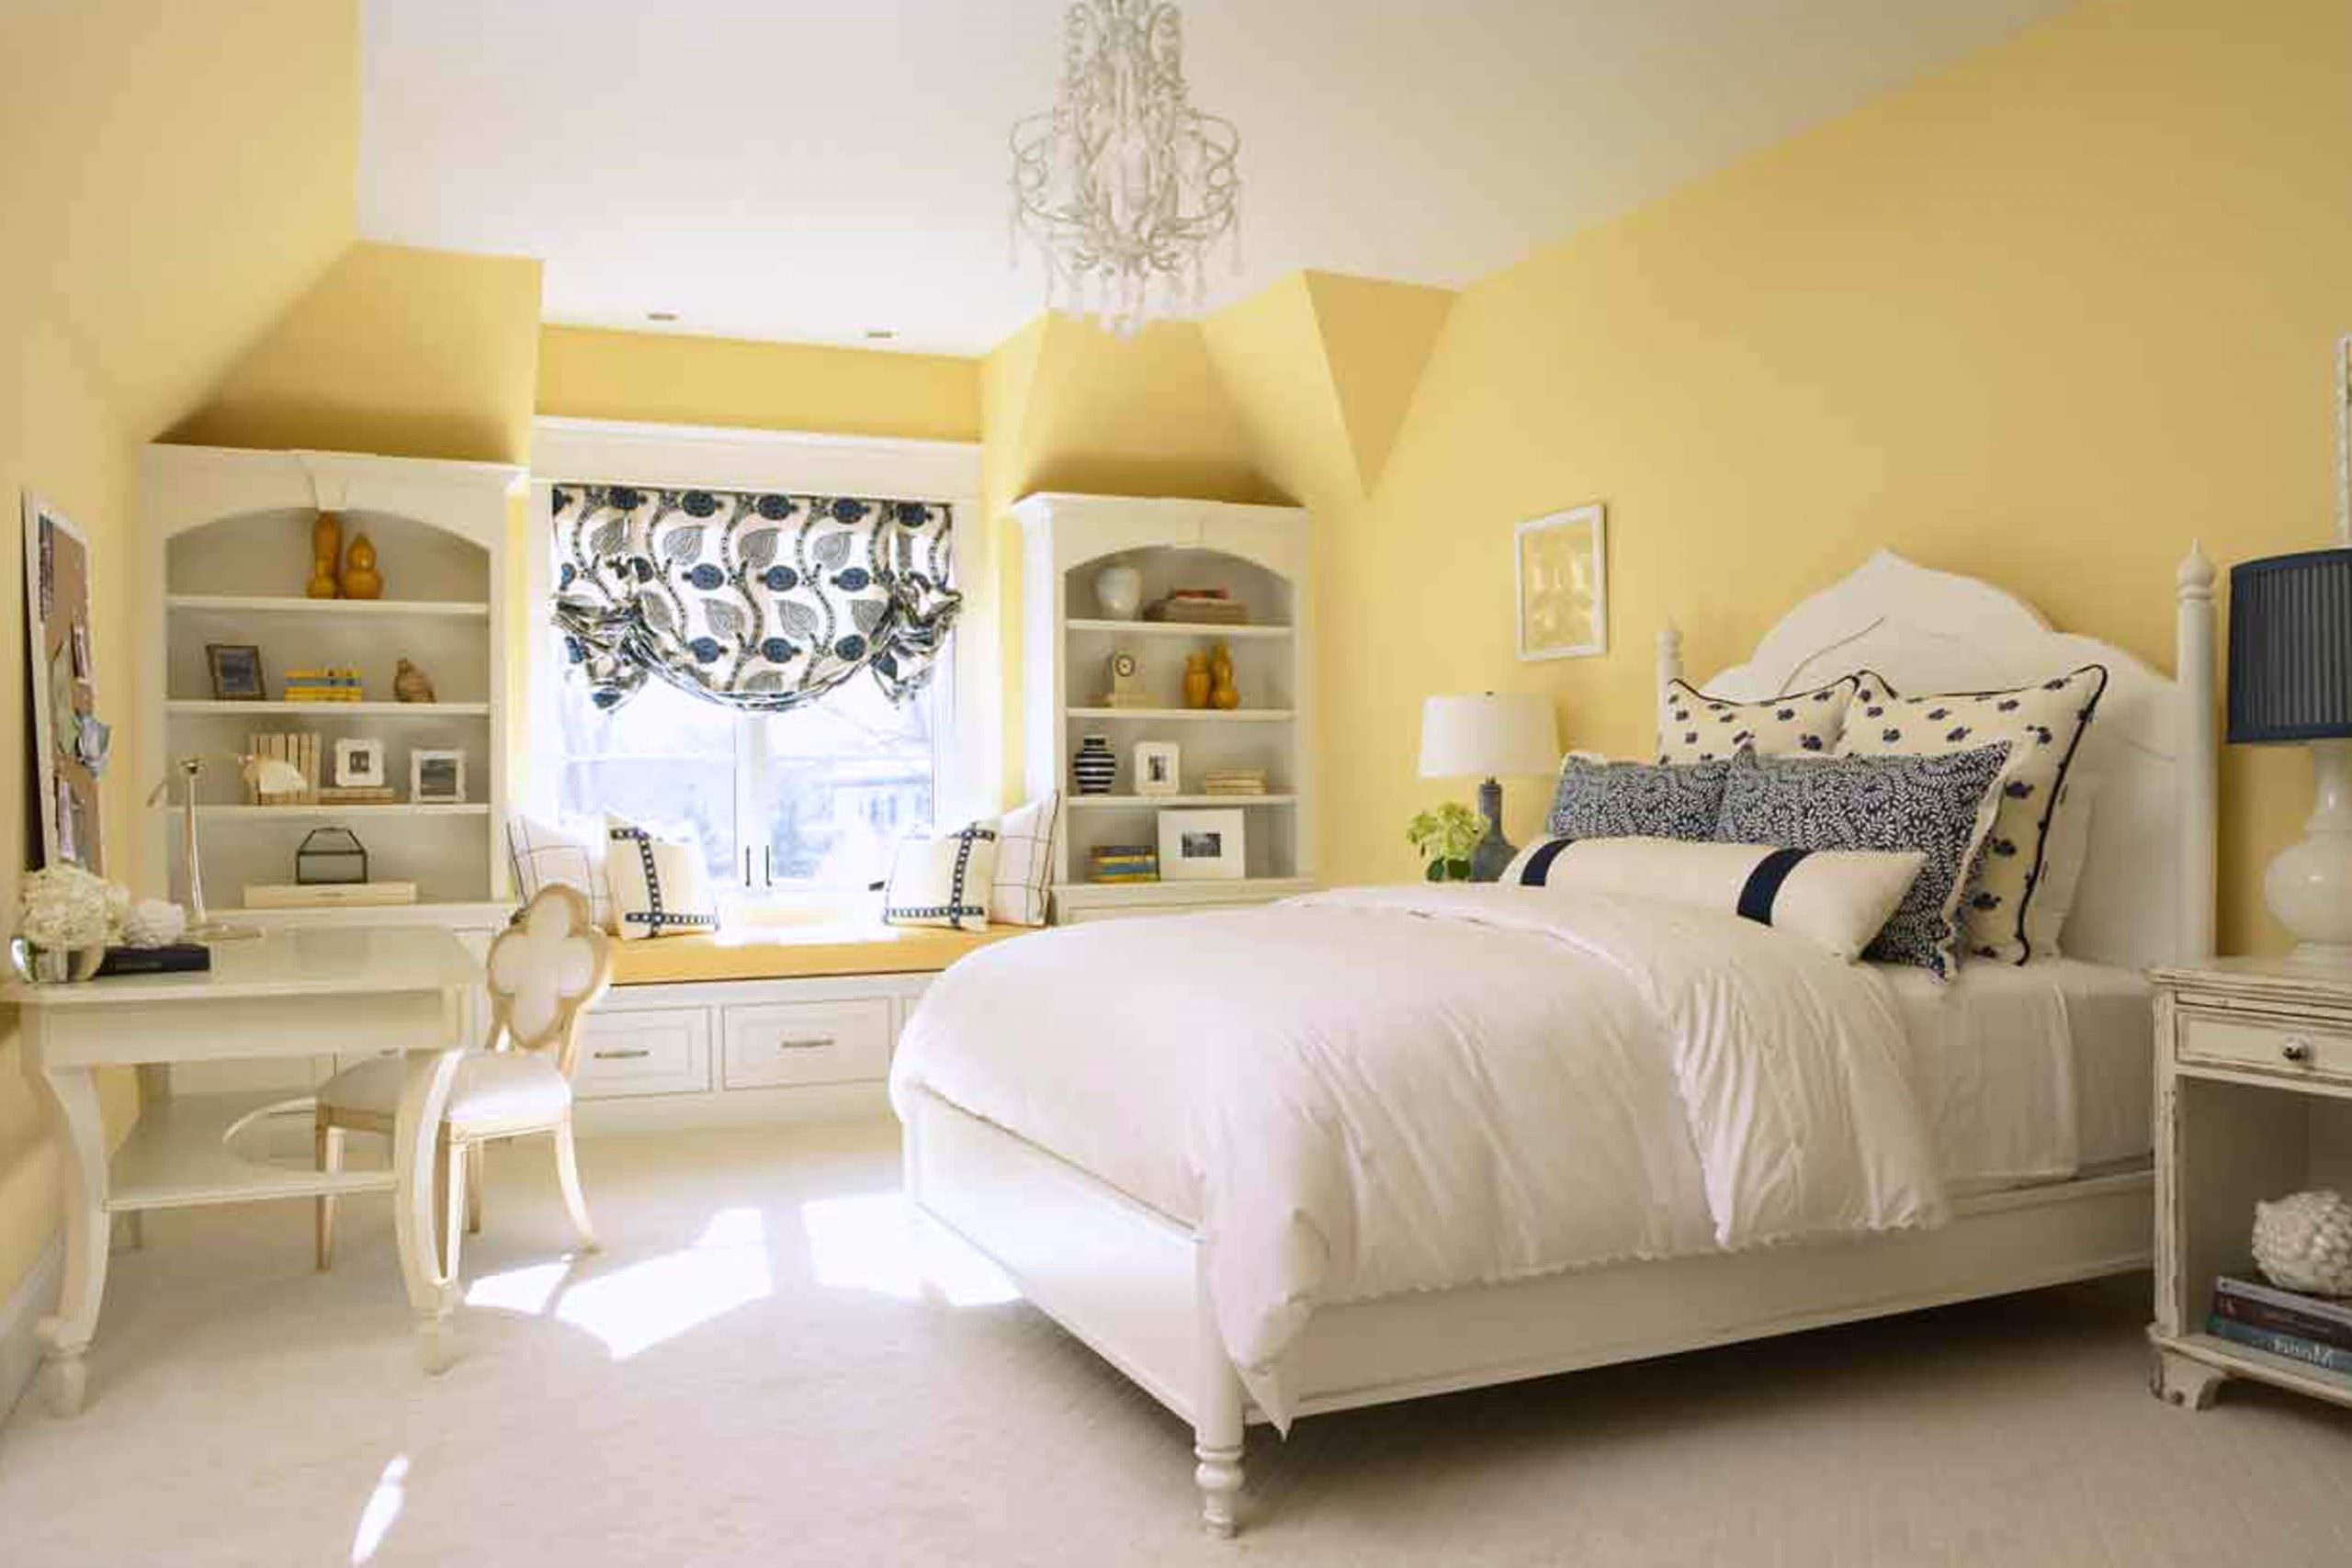 Phòng ngủ master màu vàng kem phối trắng phong cách tân cổ điển, đem lại không gian rộng rãi, thoải mái